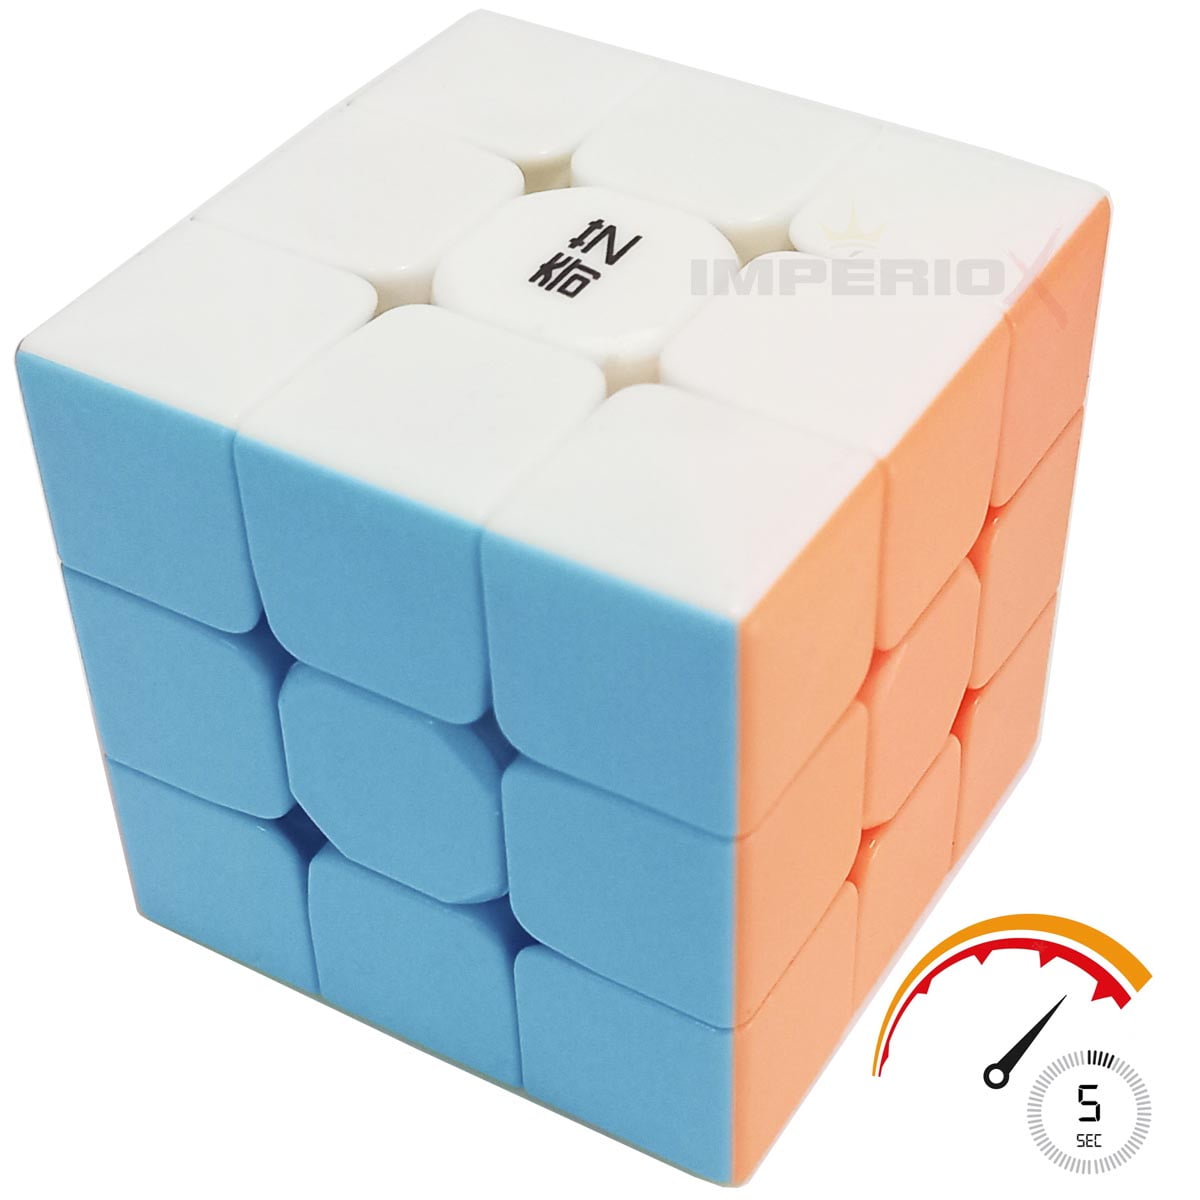 Cubo Mágico QiYi Warrior W 3x3x3 Stickerless